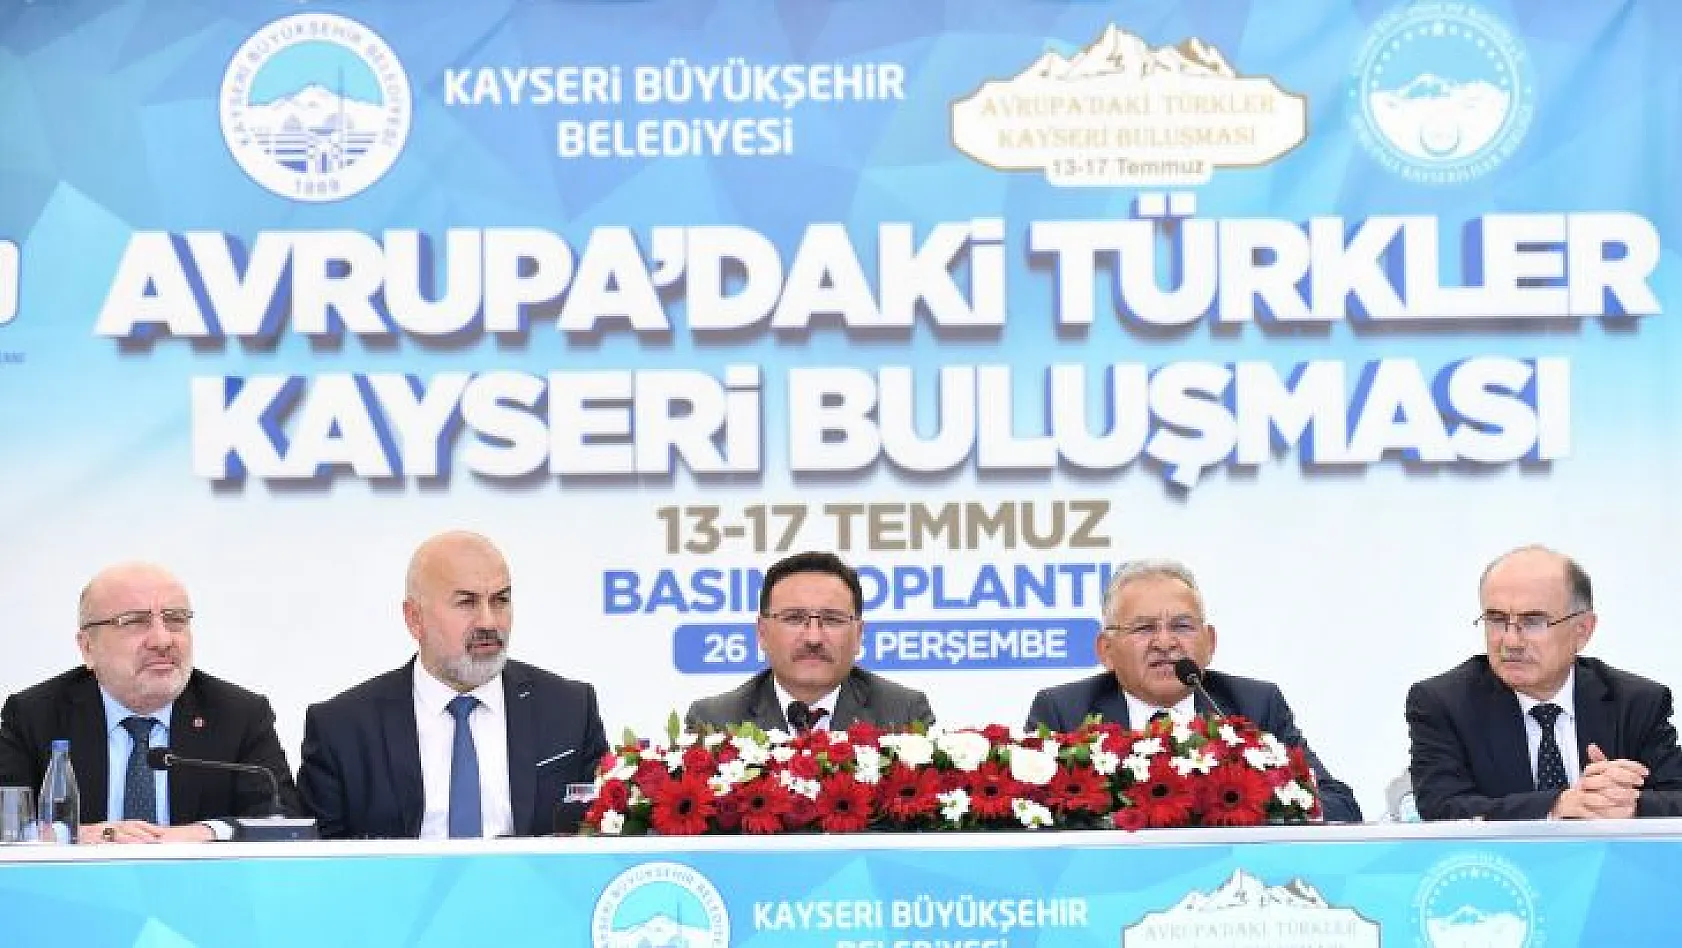 Avrupa'daki Türkler Kayseri'de buluşacak